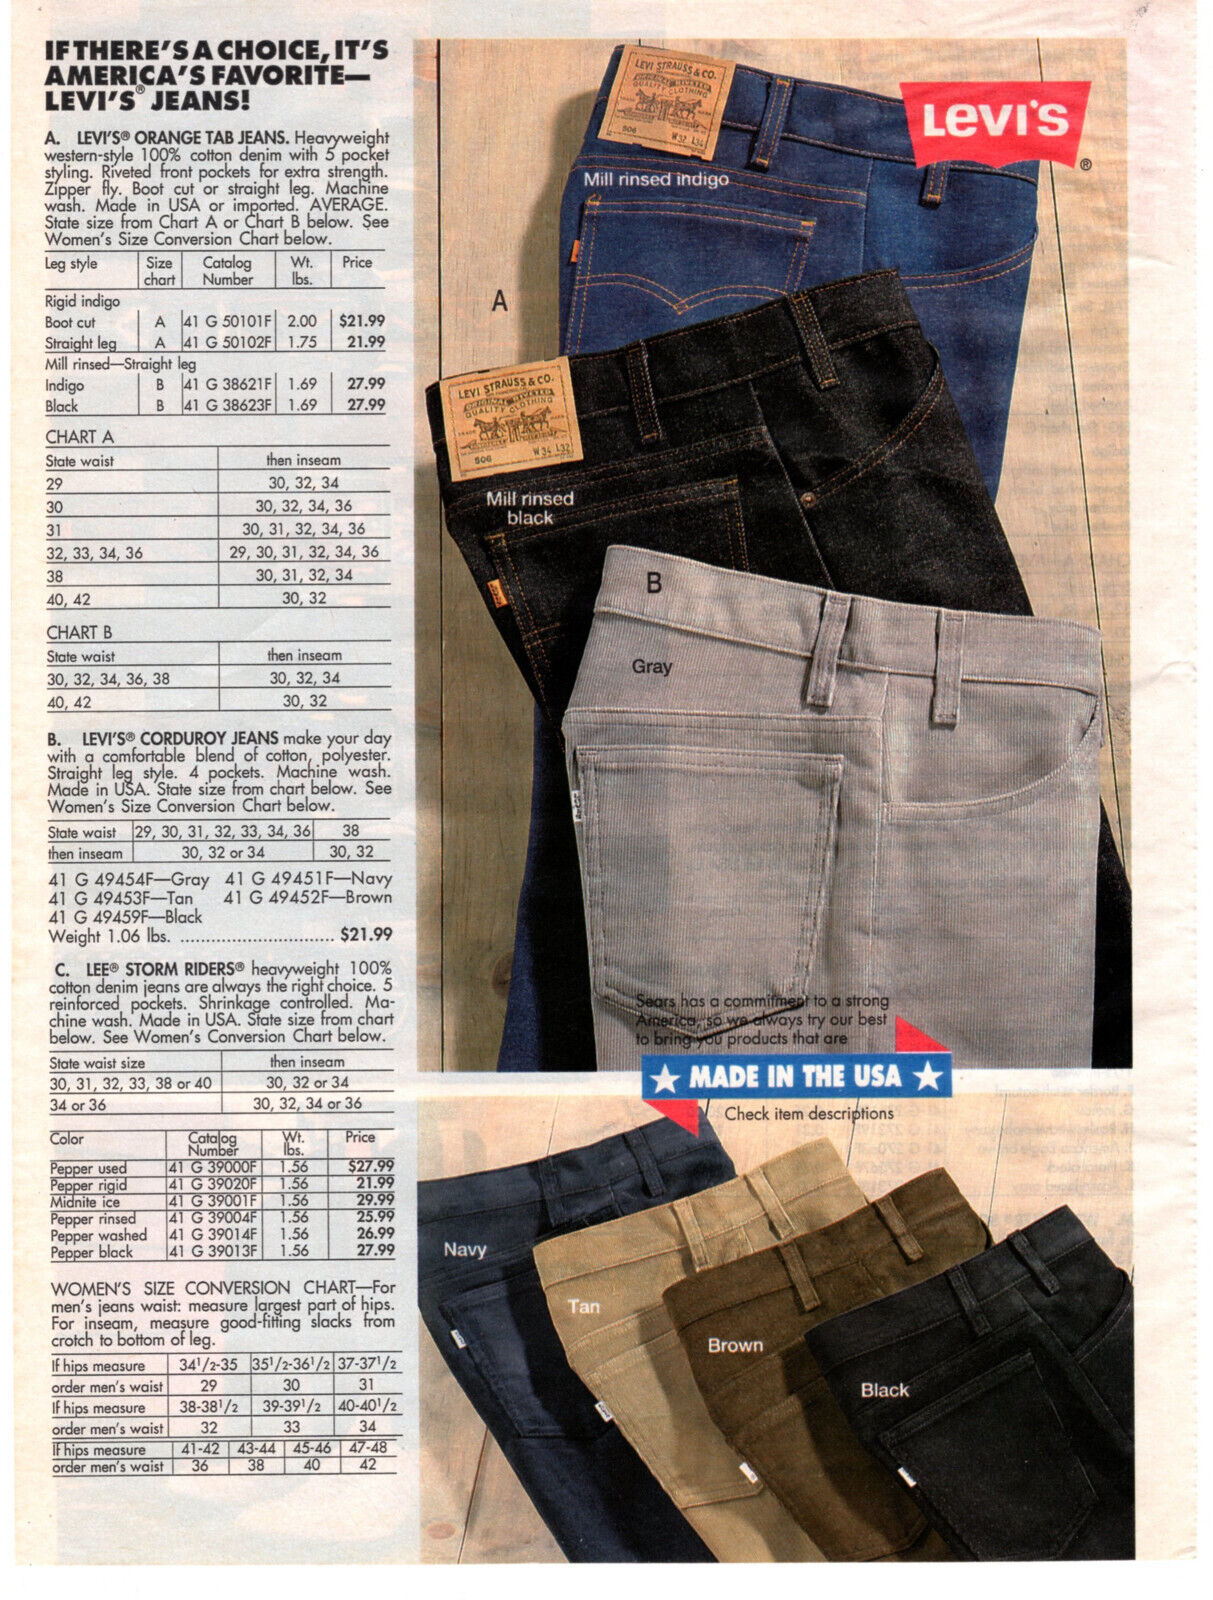 LEVI\'S Jeans Denim Men\'s 90s Fashion 1991 Vintage Print Ad Original Man Cave